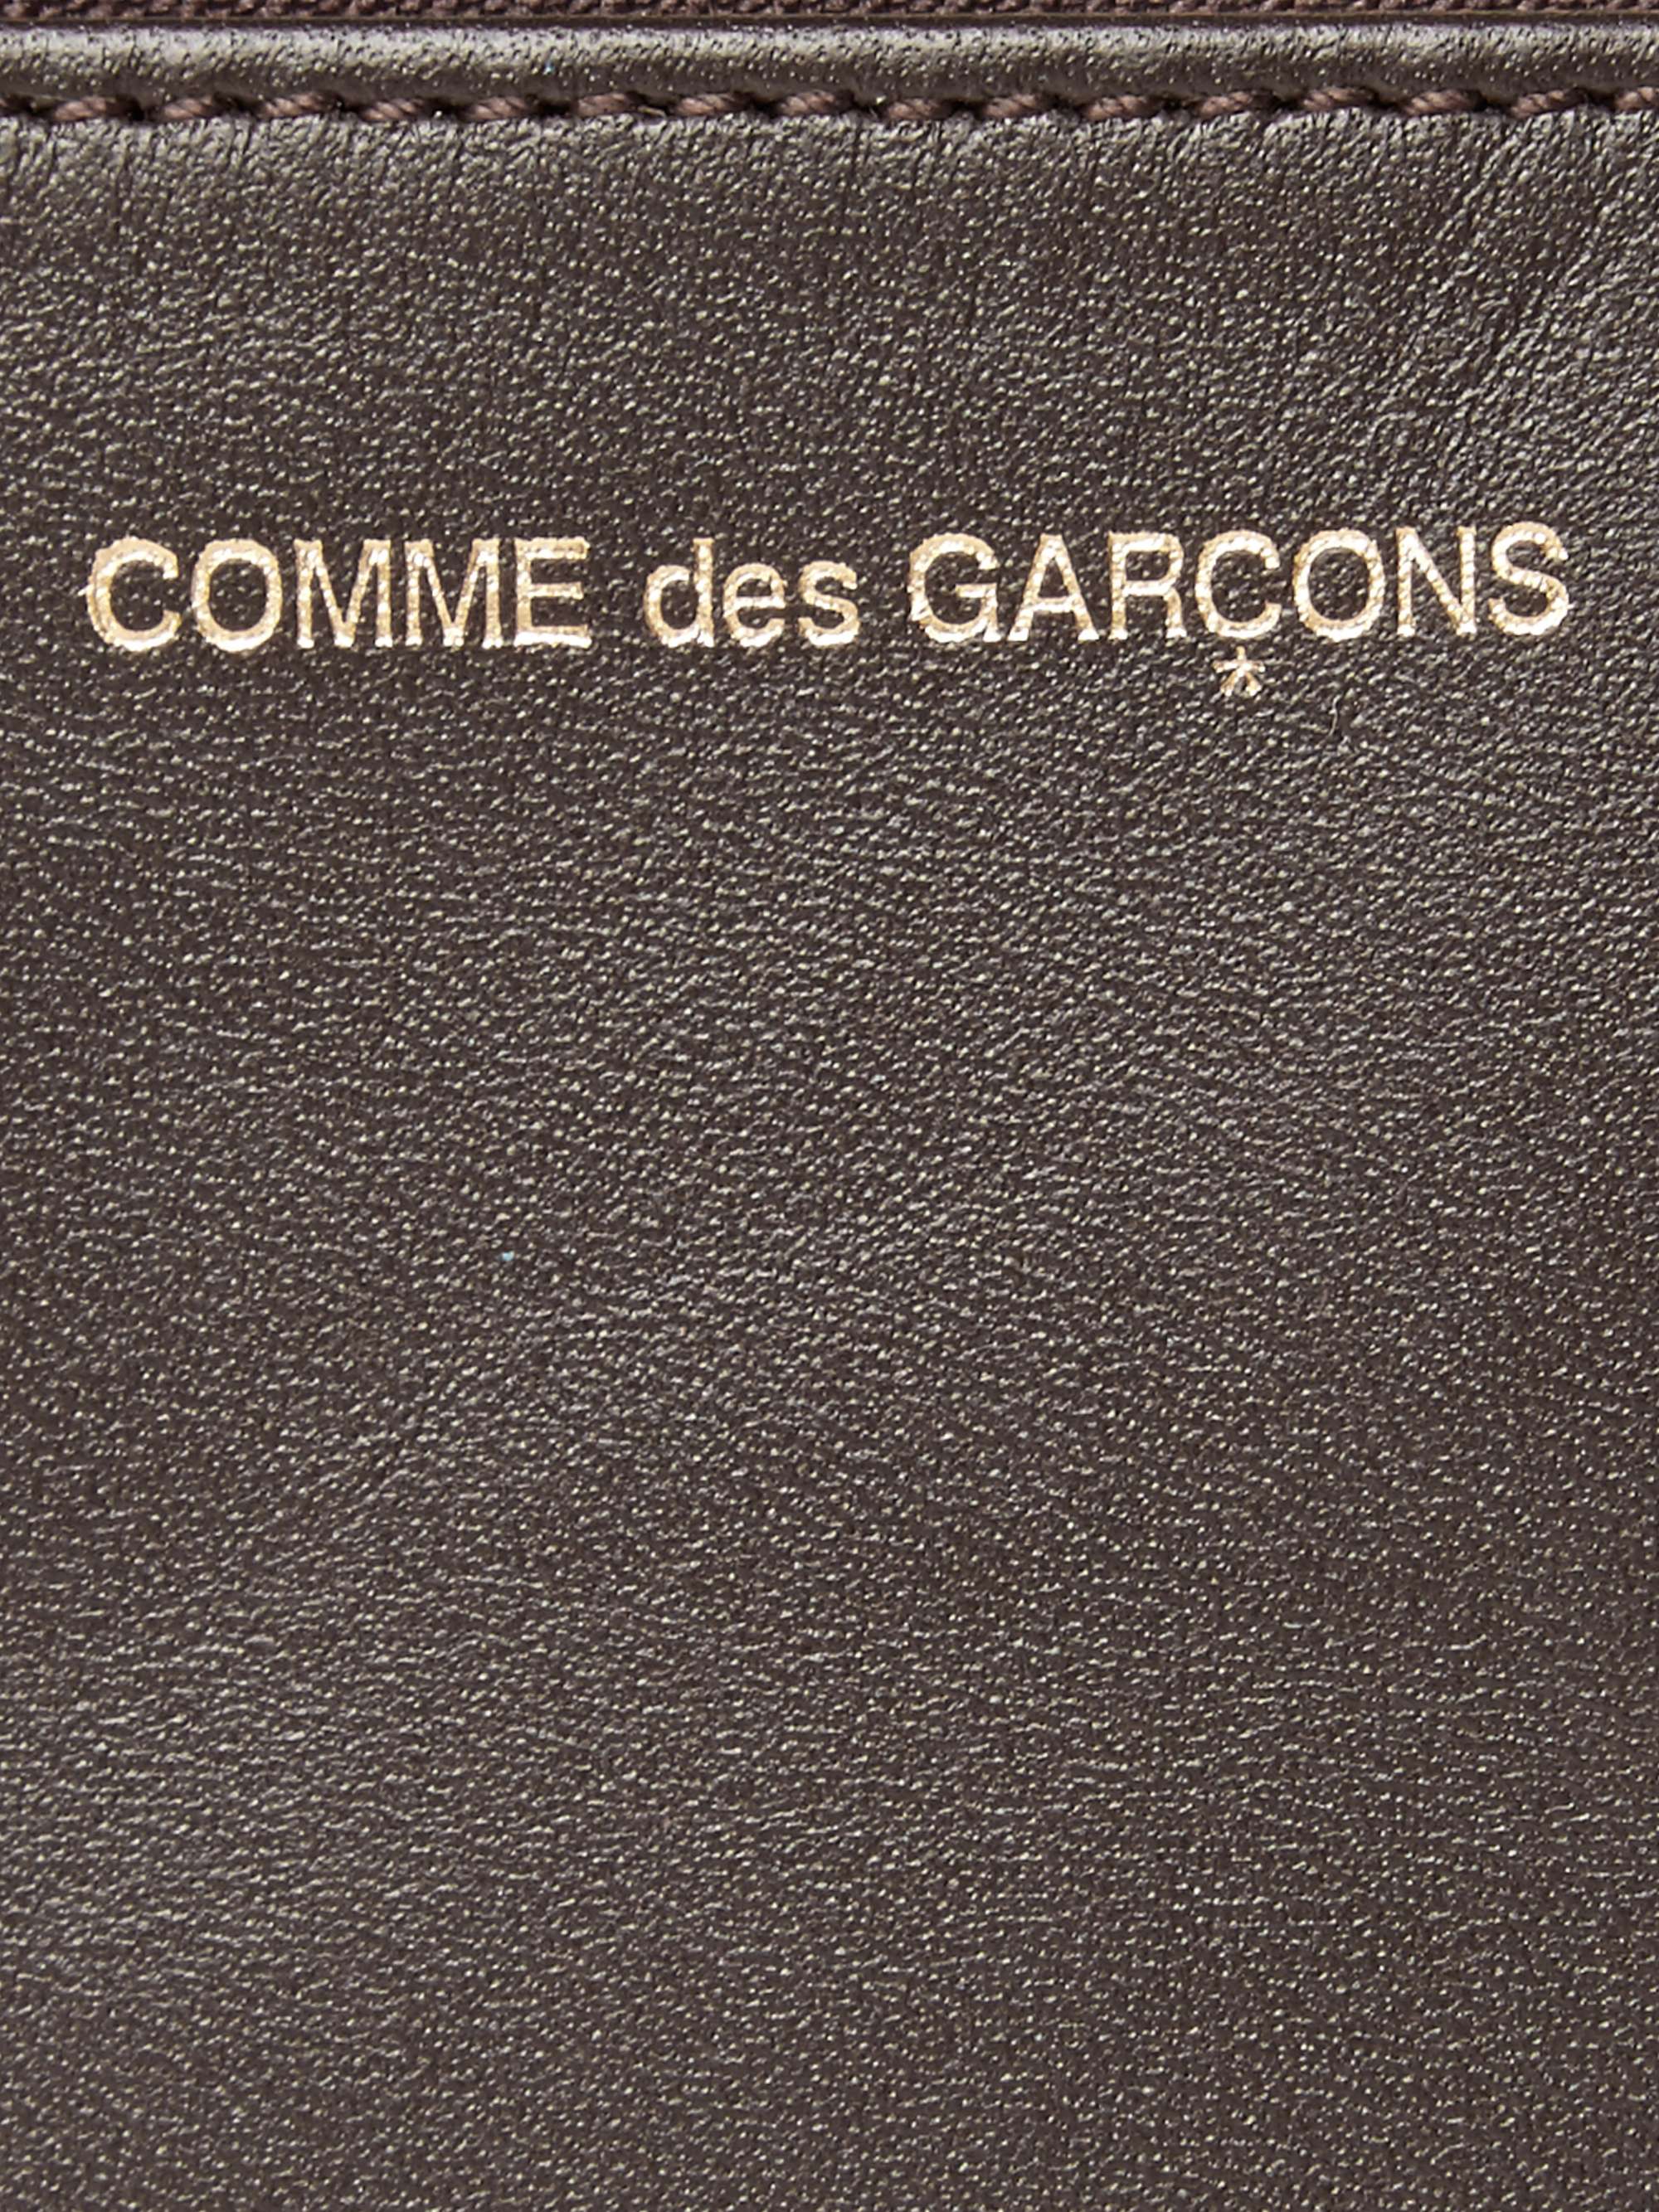 COMME DES GARÇONS Leather Coin Wallet